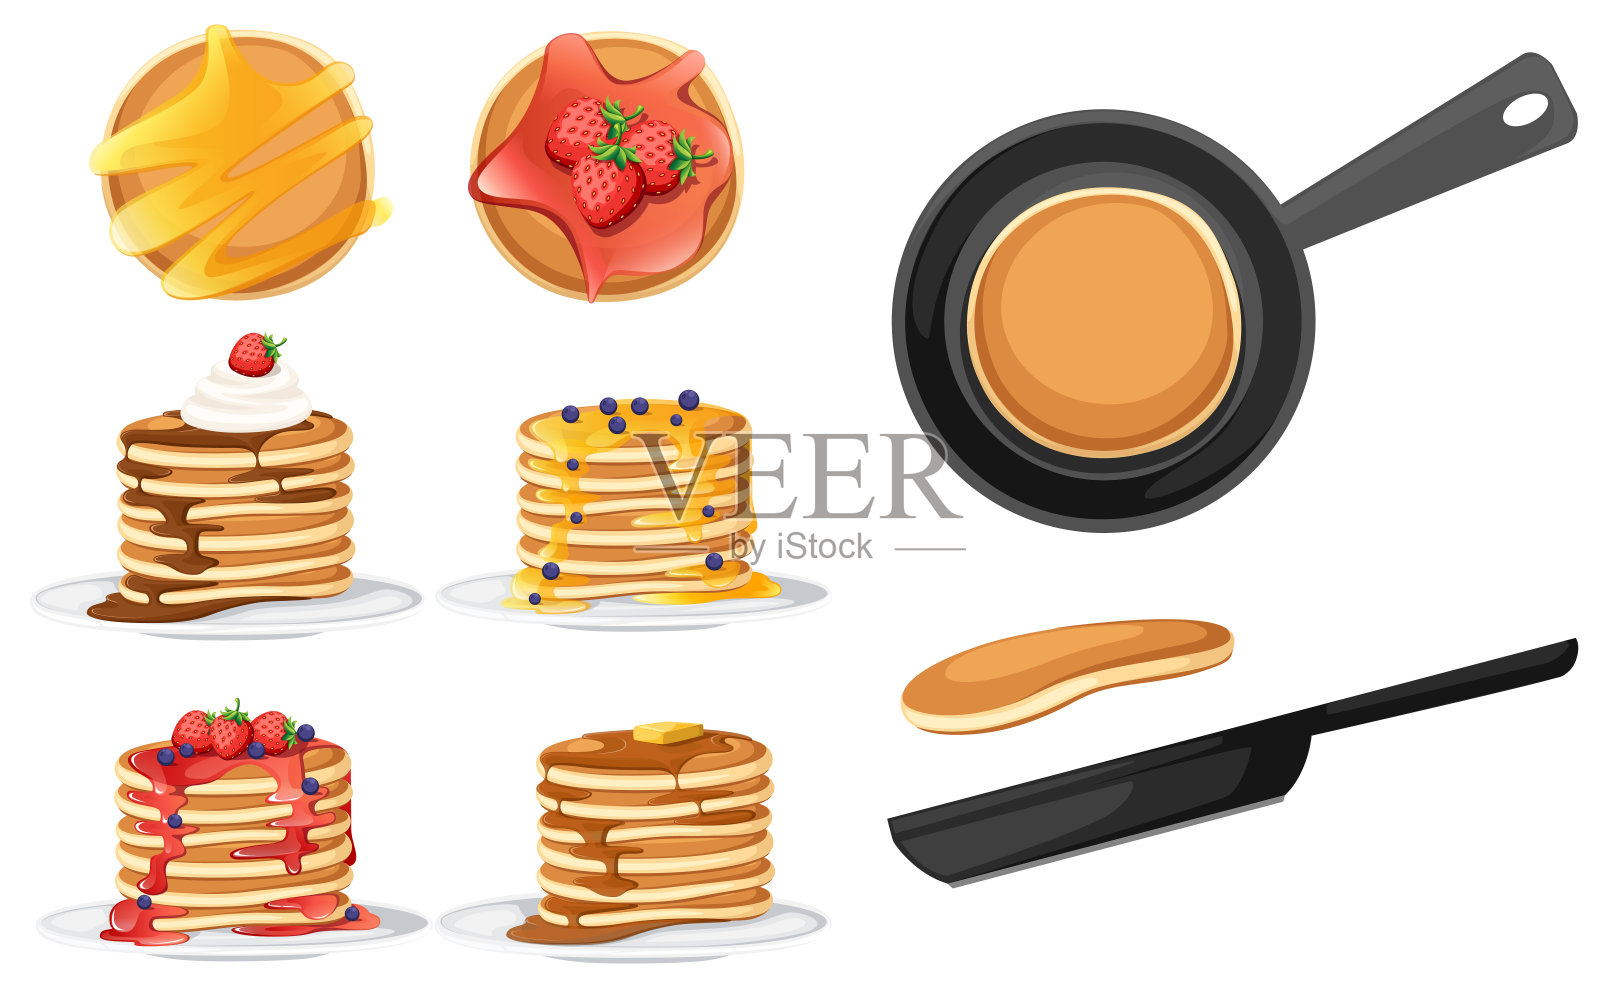 一套四种不同配料的煎饼。煎饼放在白盘子里。用糖浆或蜂蜜烘烤。早餐的概念。松软的煎饼在煎锅里。平面矢量插图在白色背景插画图片素材